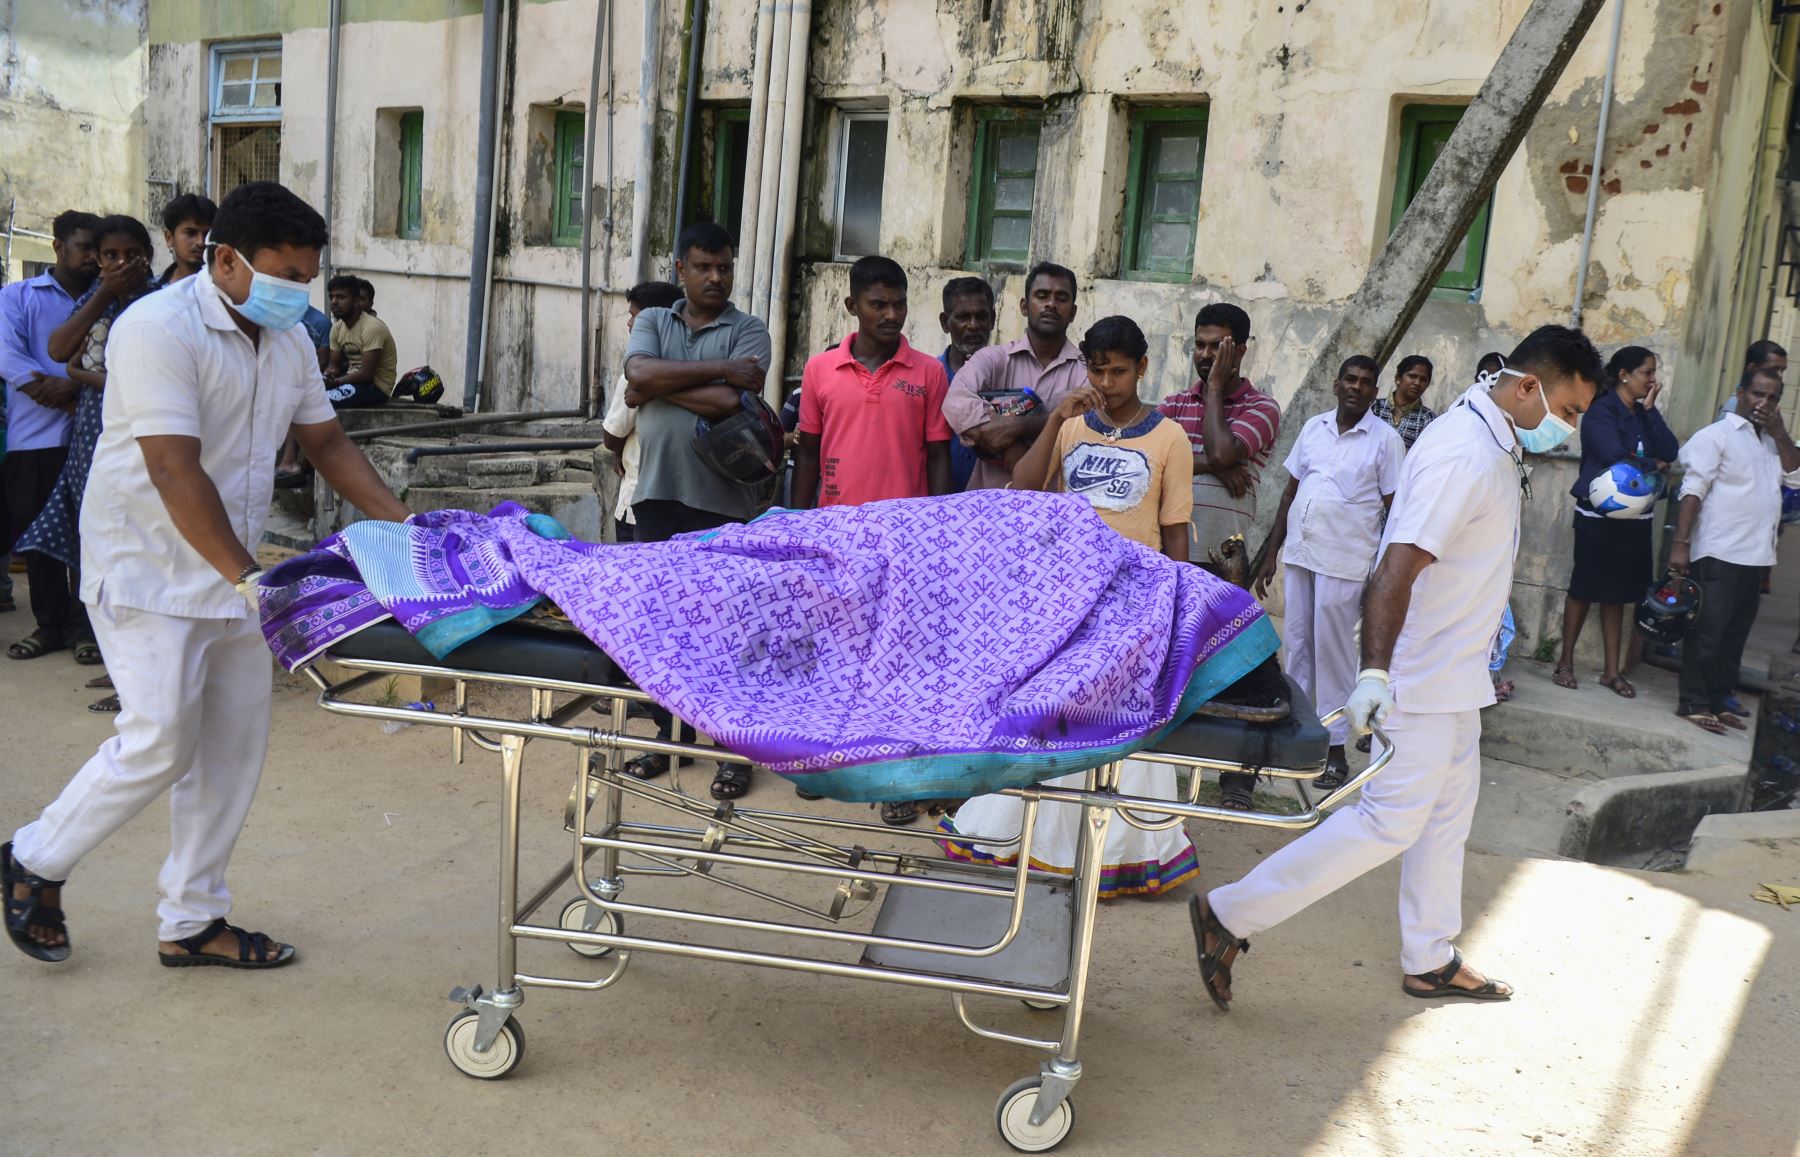 Trabajadores del hospital de Sri Lanka transportan un cadáver en un carro en la morgue de un hospital luego de una explosión en una iglesia en Batticaloa, al este de Sri Lanka. Foto:AFP